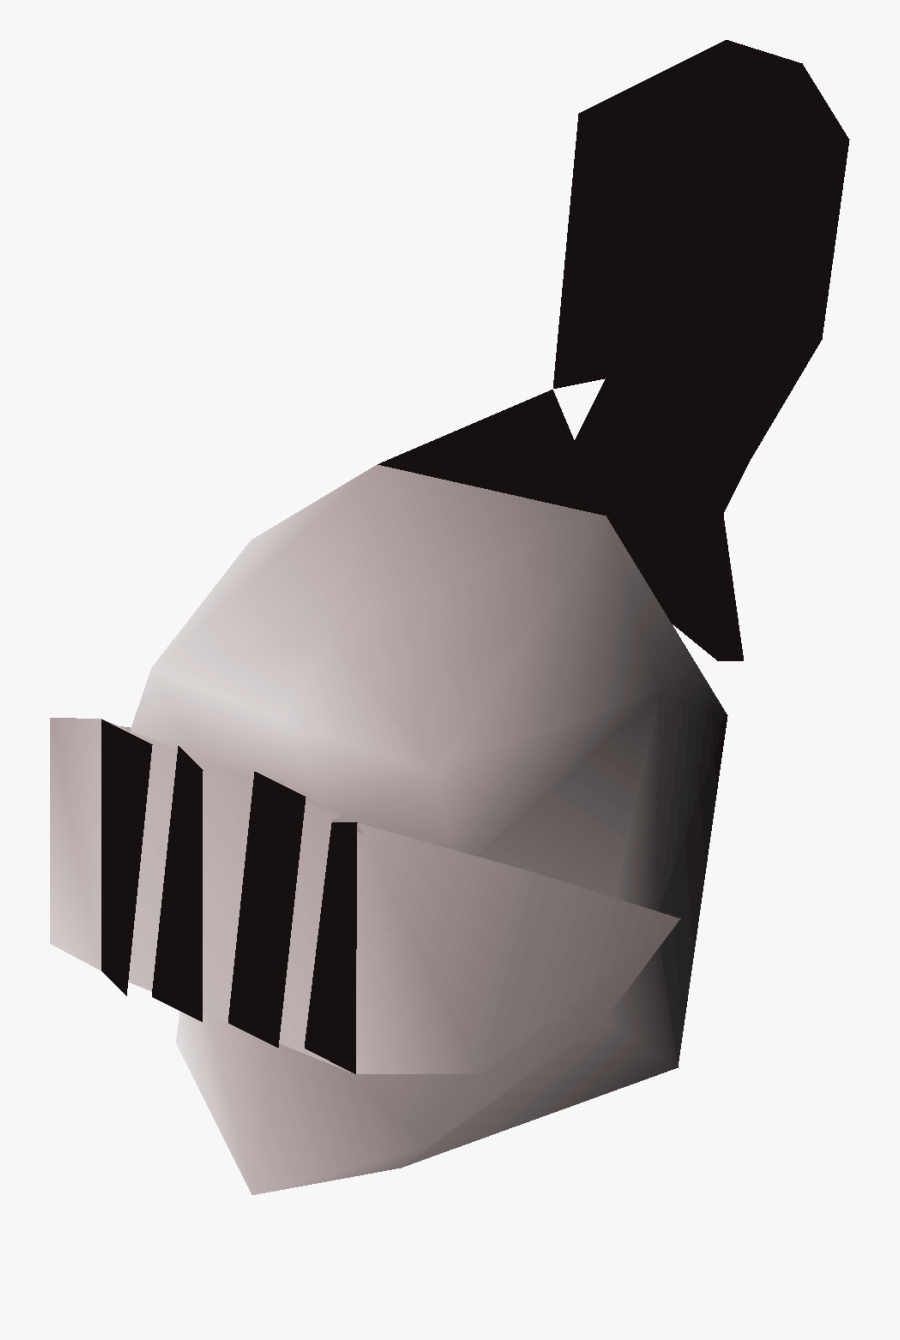 Osrs White Knight Helmet - Rune Full Helm Png, Transparent Clipart